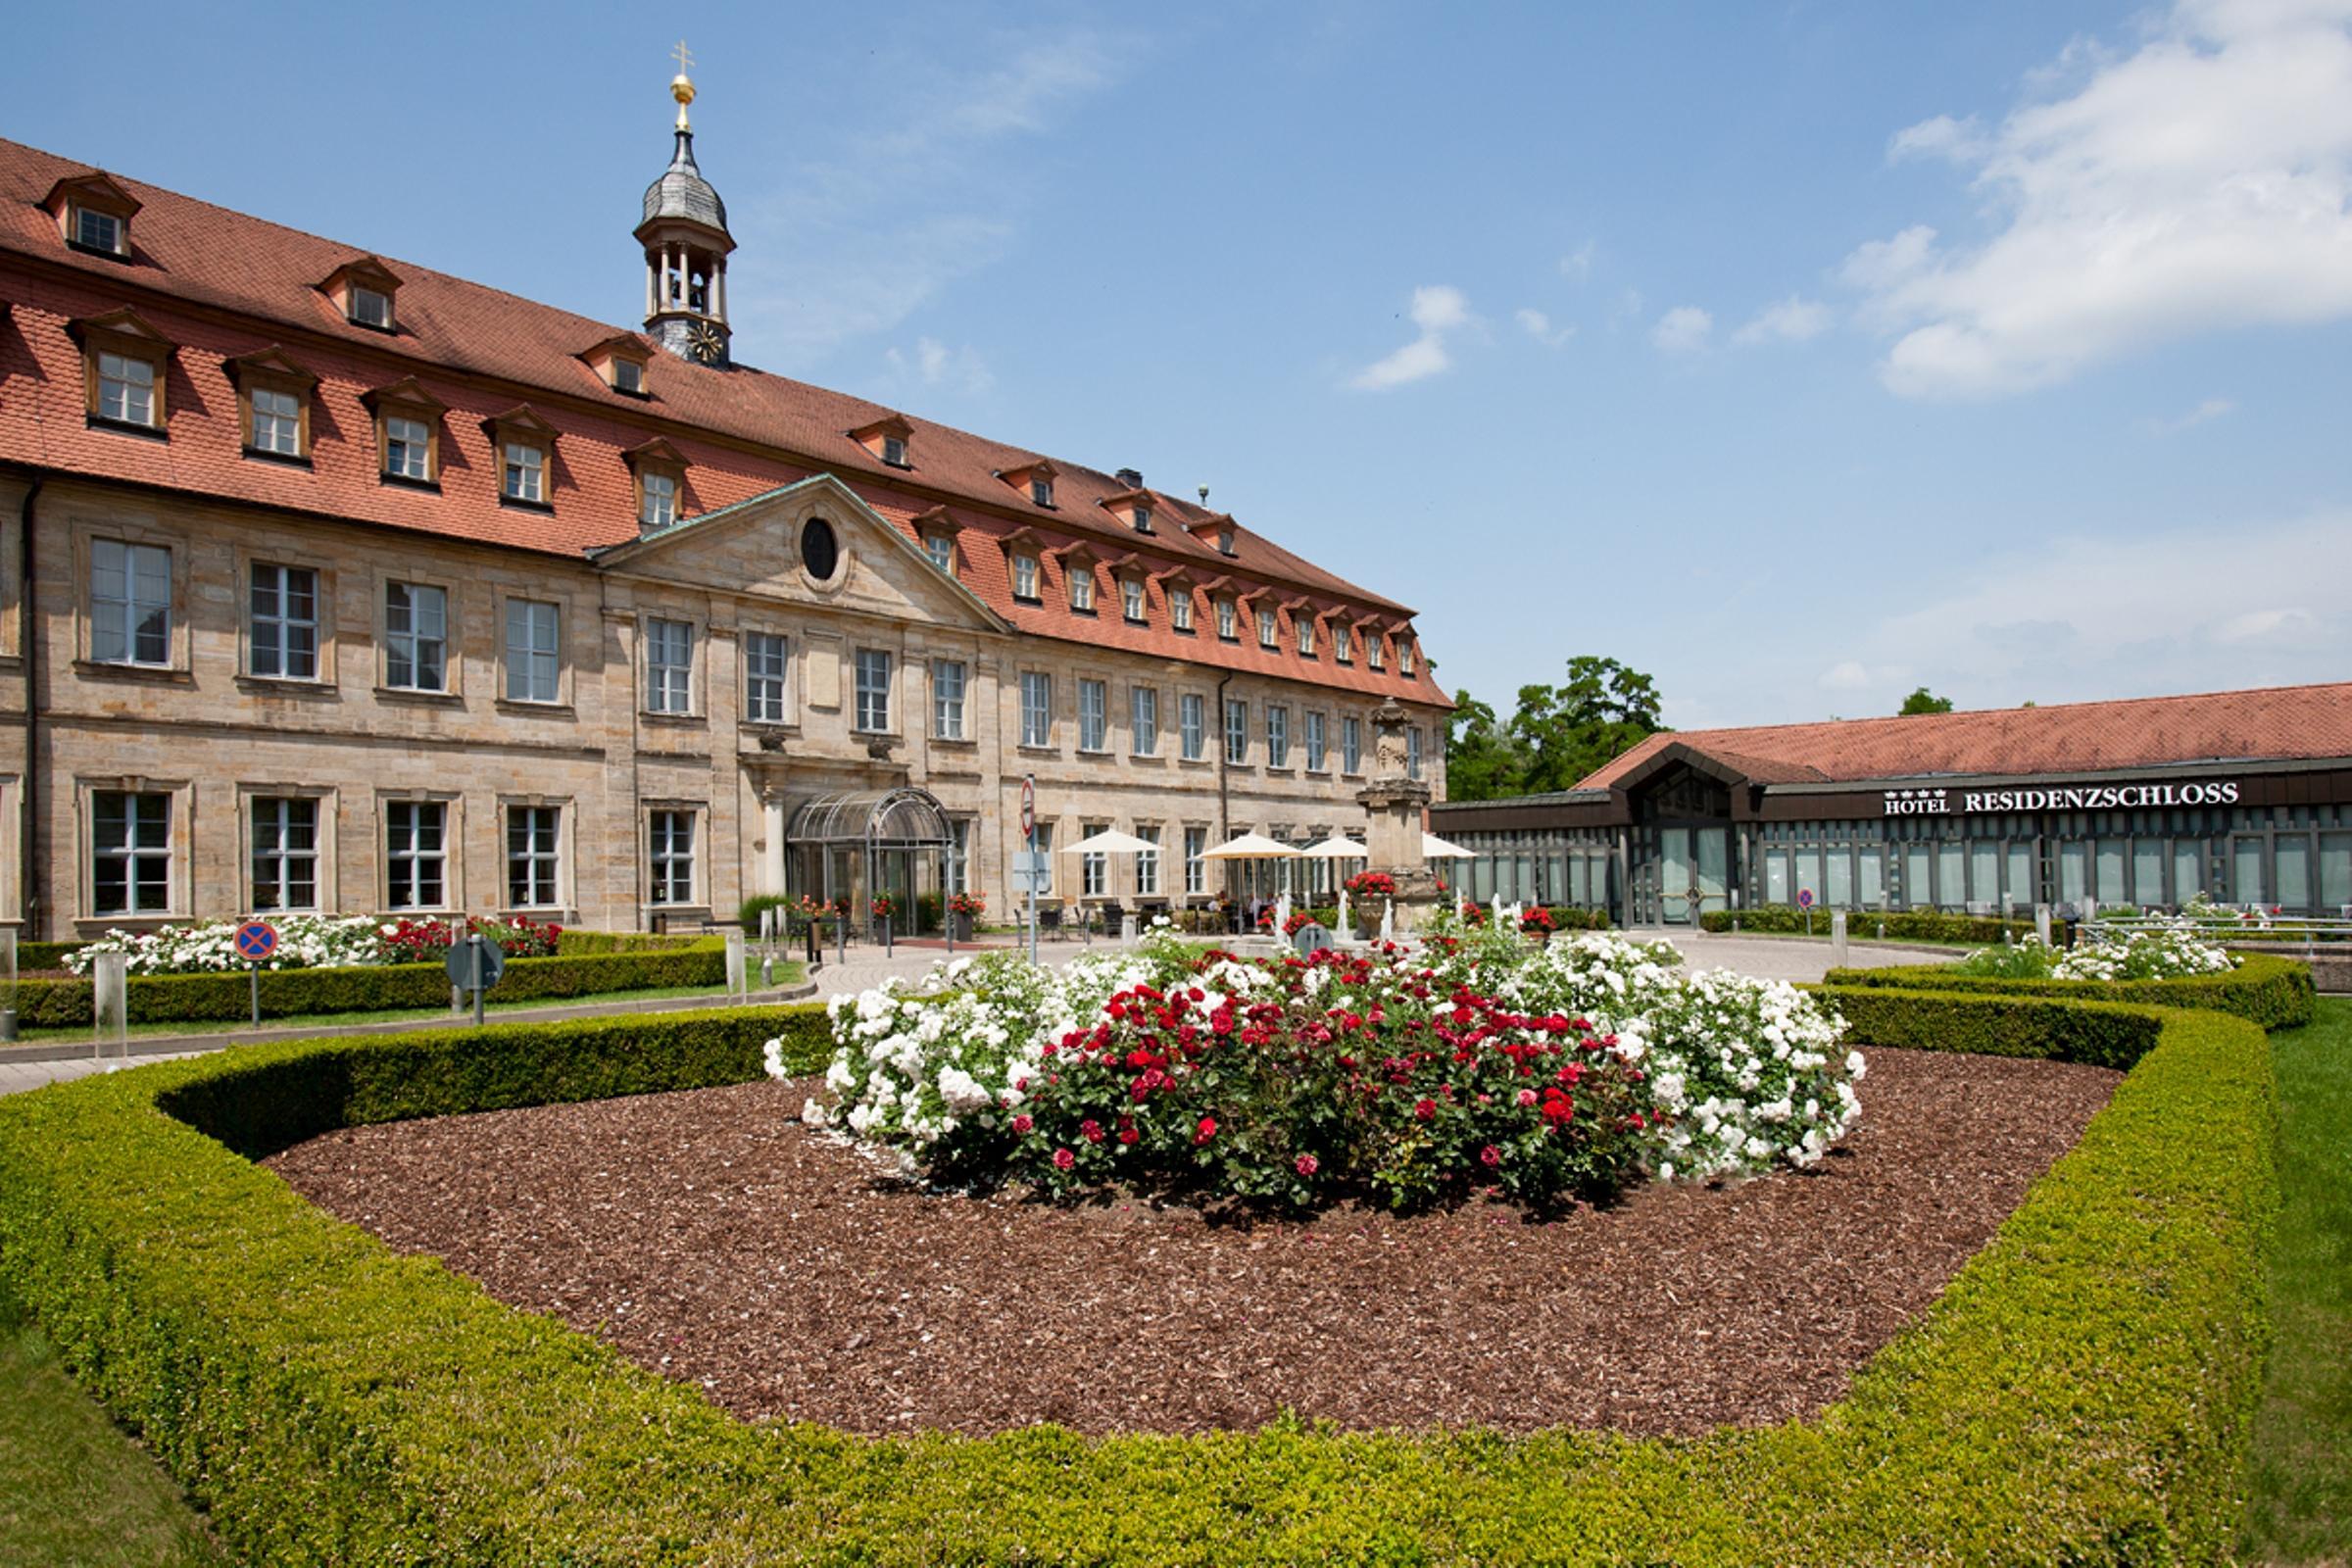 Welcome Hotel Residenzschloss Bamberg image